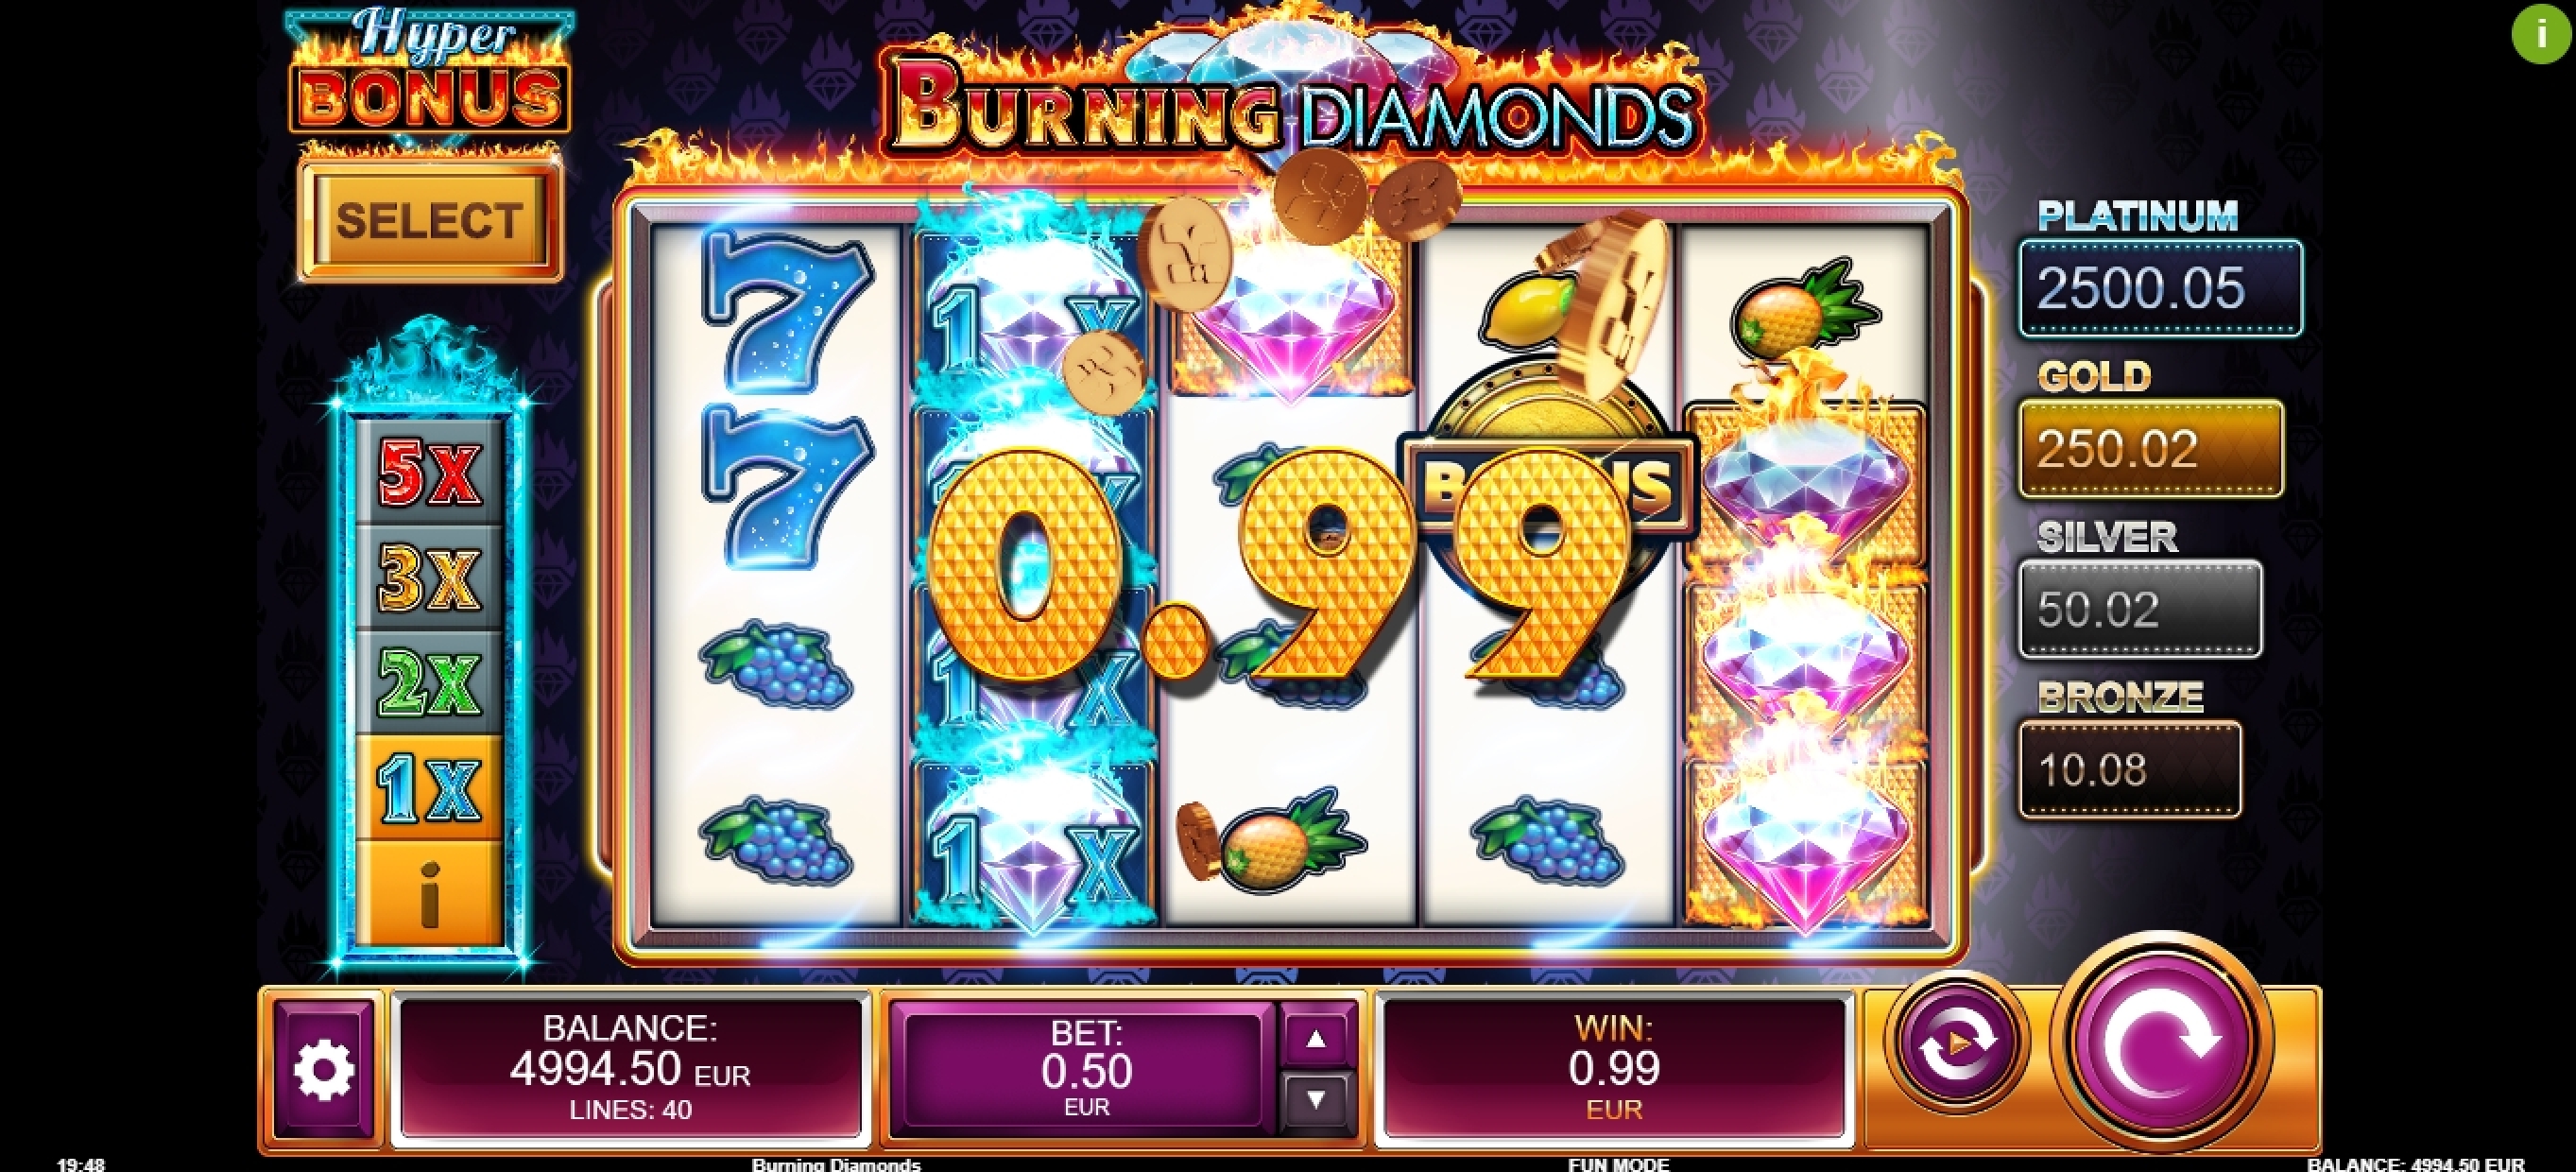 Win Money in Burning Diamonds Free Slot Game by Kalamba Games